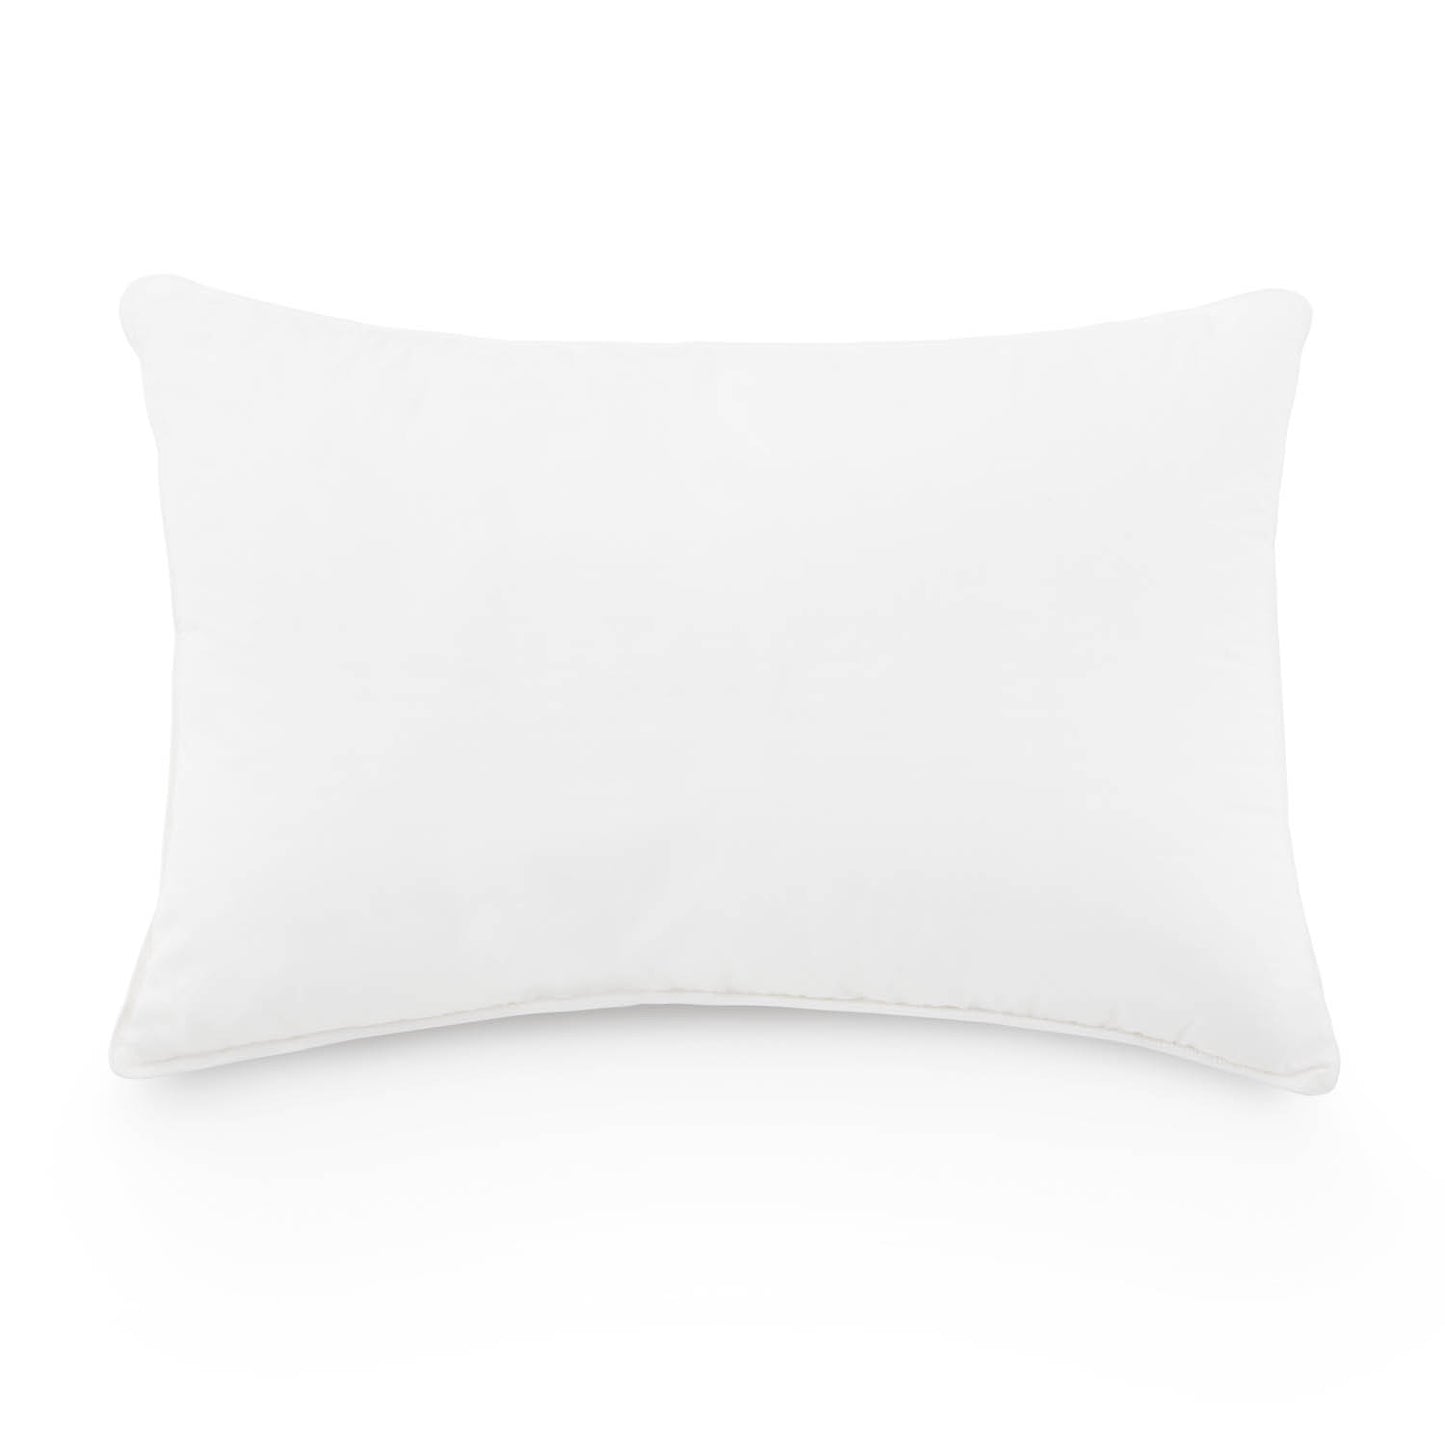 Weekender Down Blend Pillow, Standard